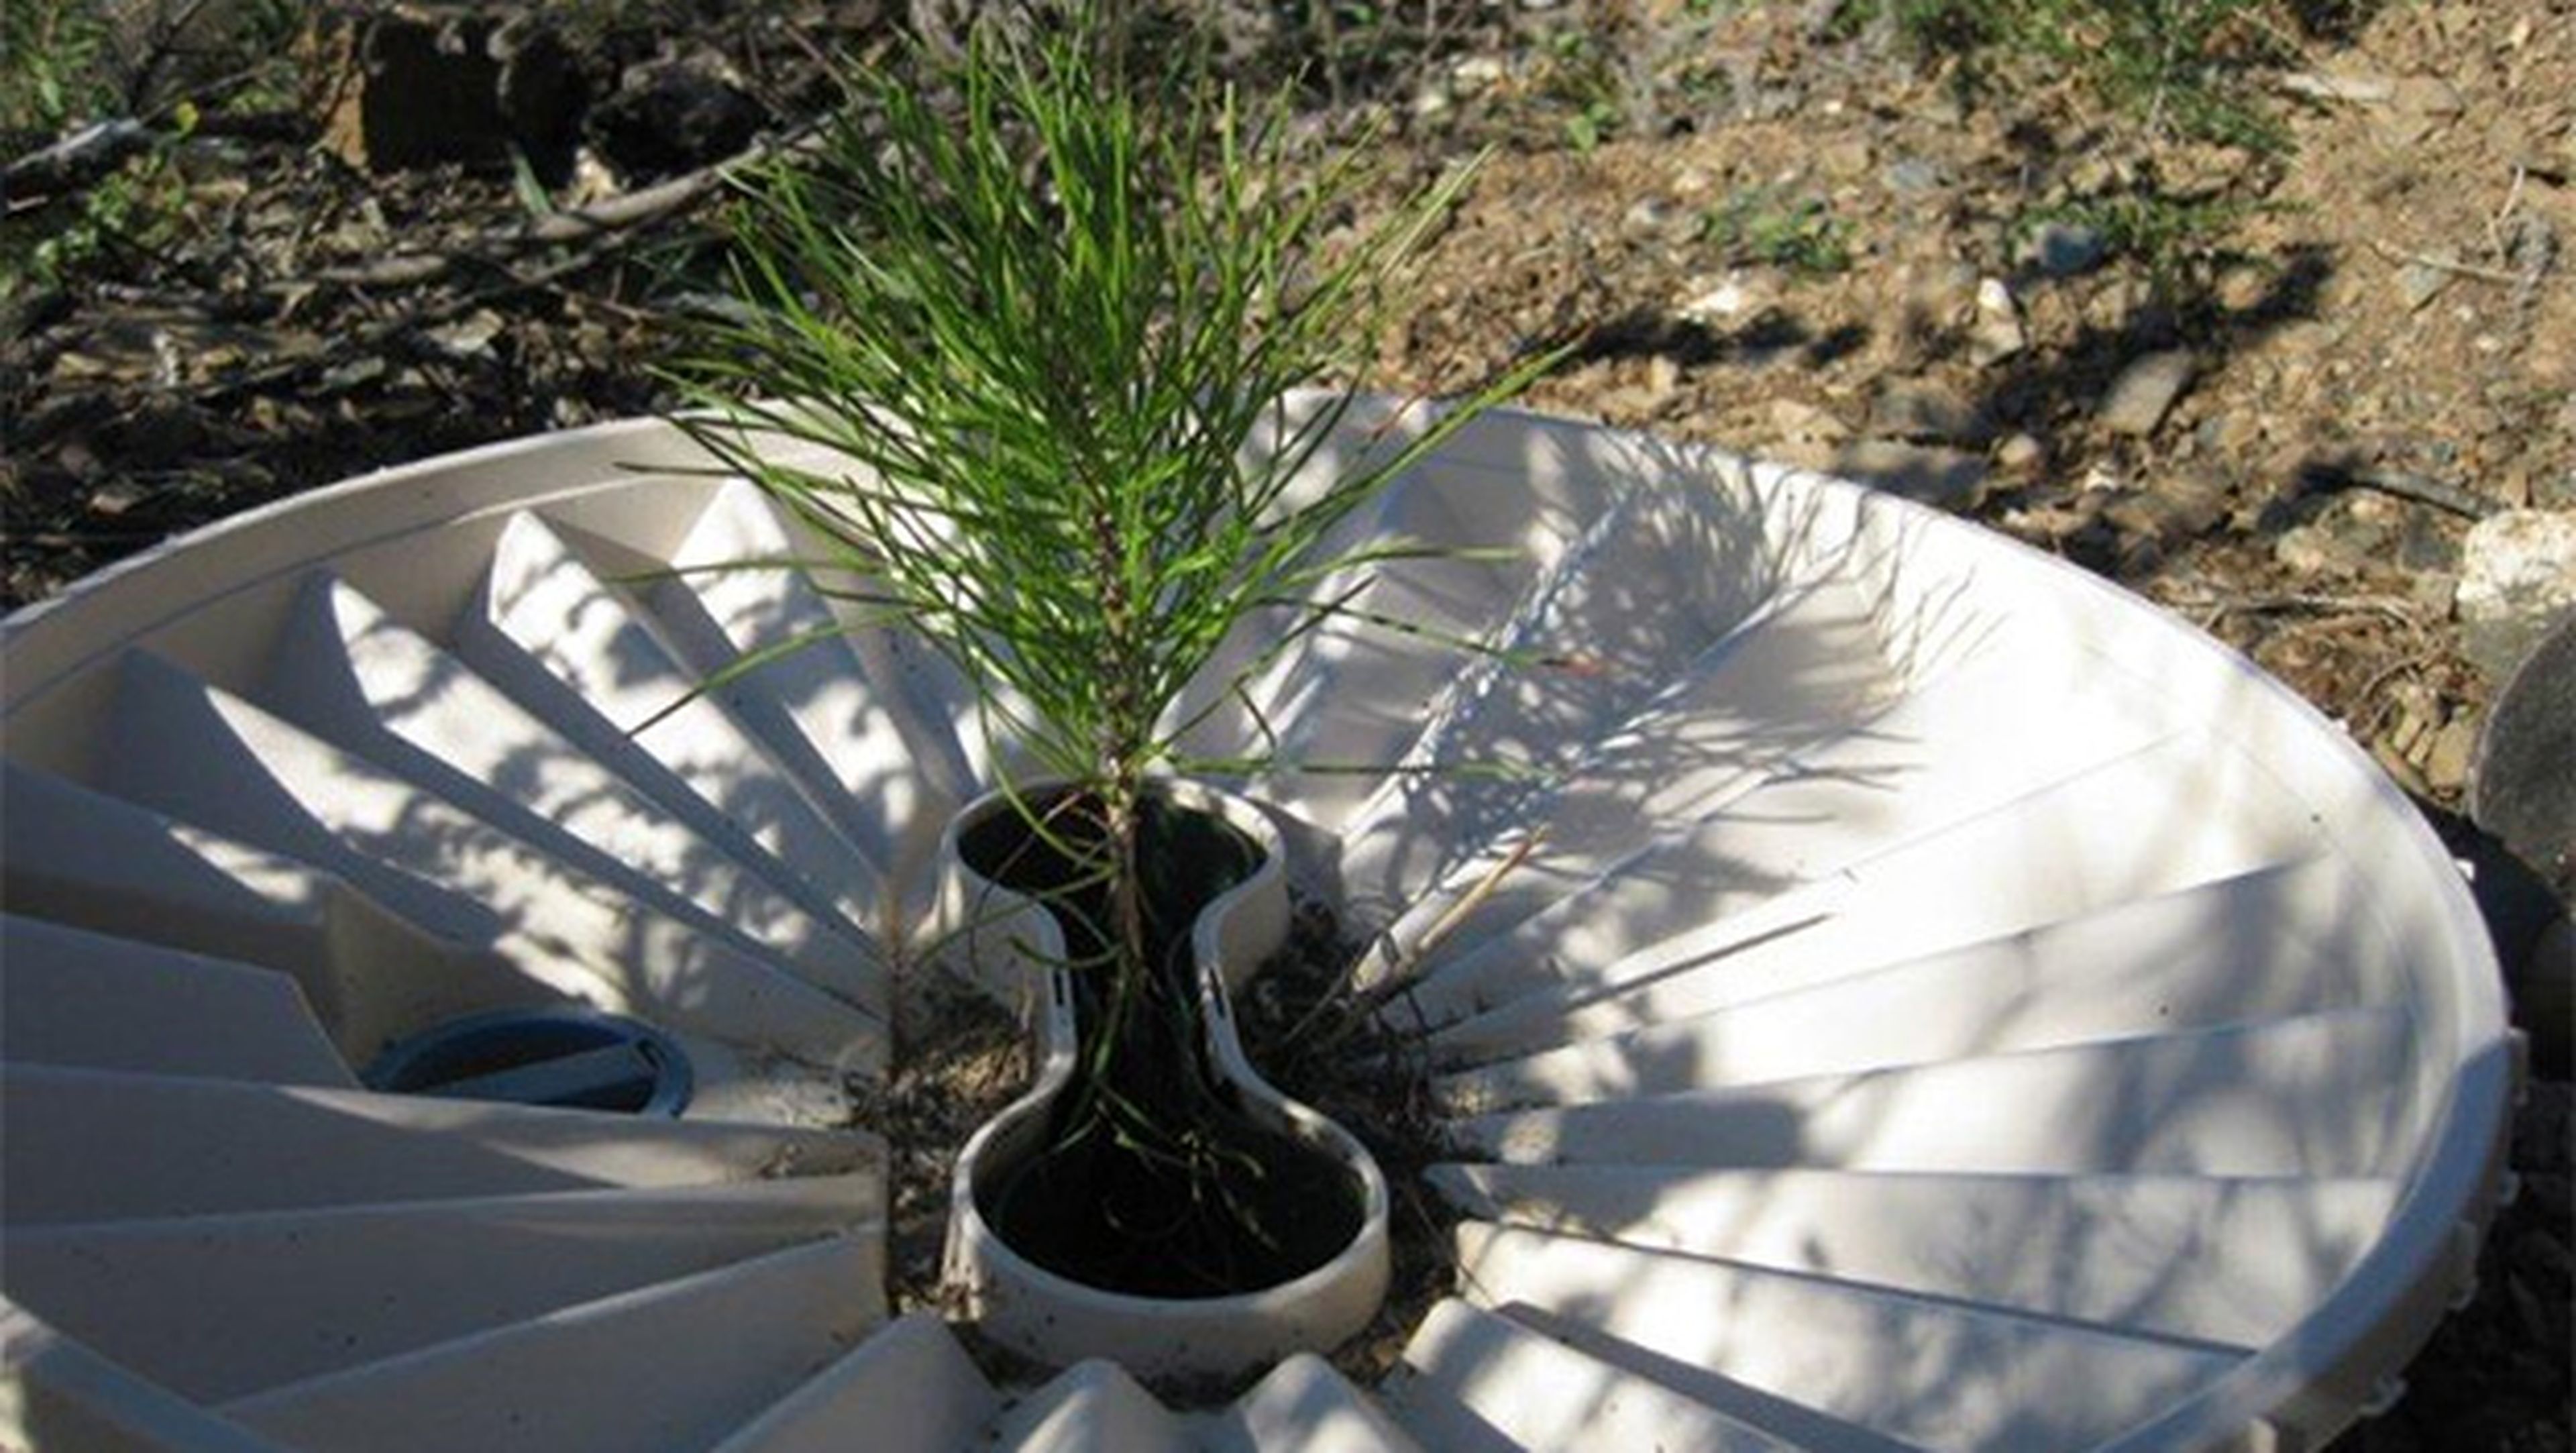 Groasis Waterboxx, la caja de agua que lucha contra la desertificación